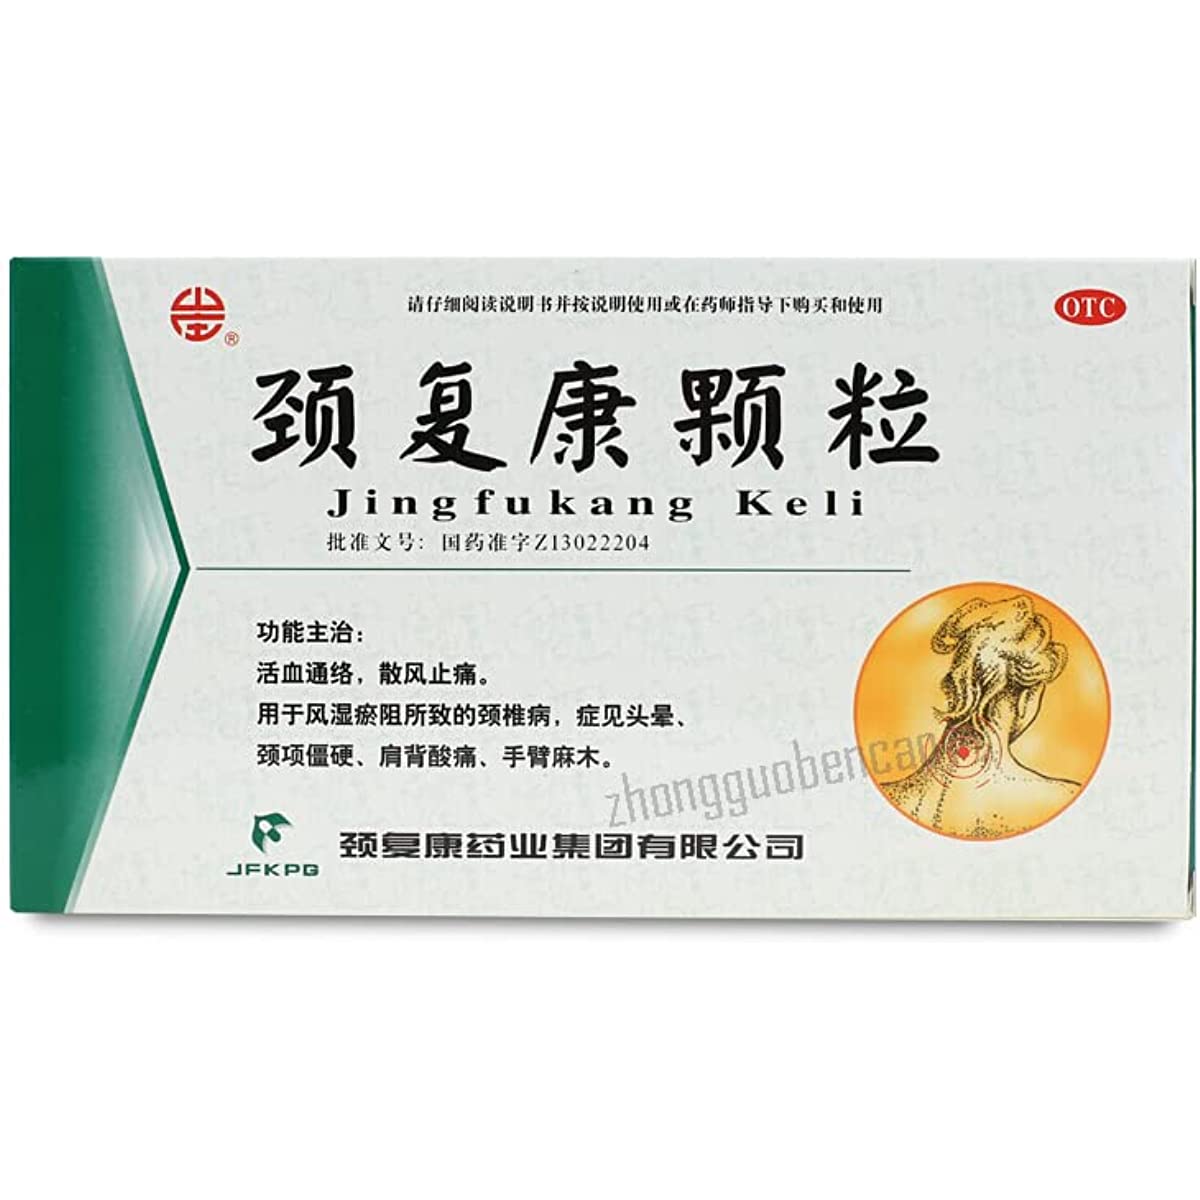 1 Box, Jingfukang Keli 14 Bags/Box 颈复康颗粒